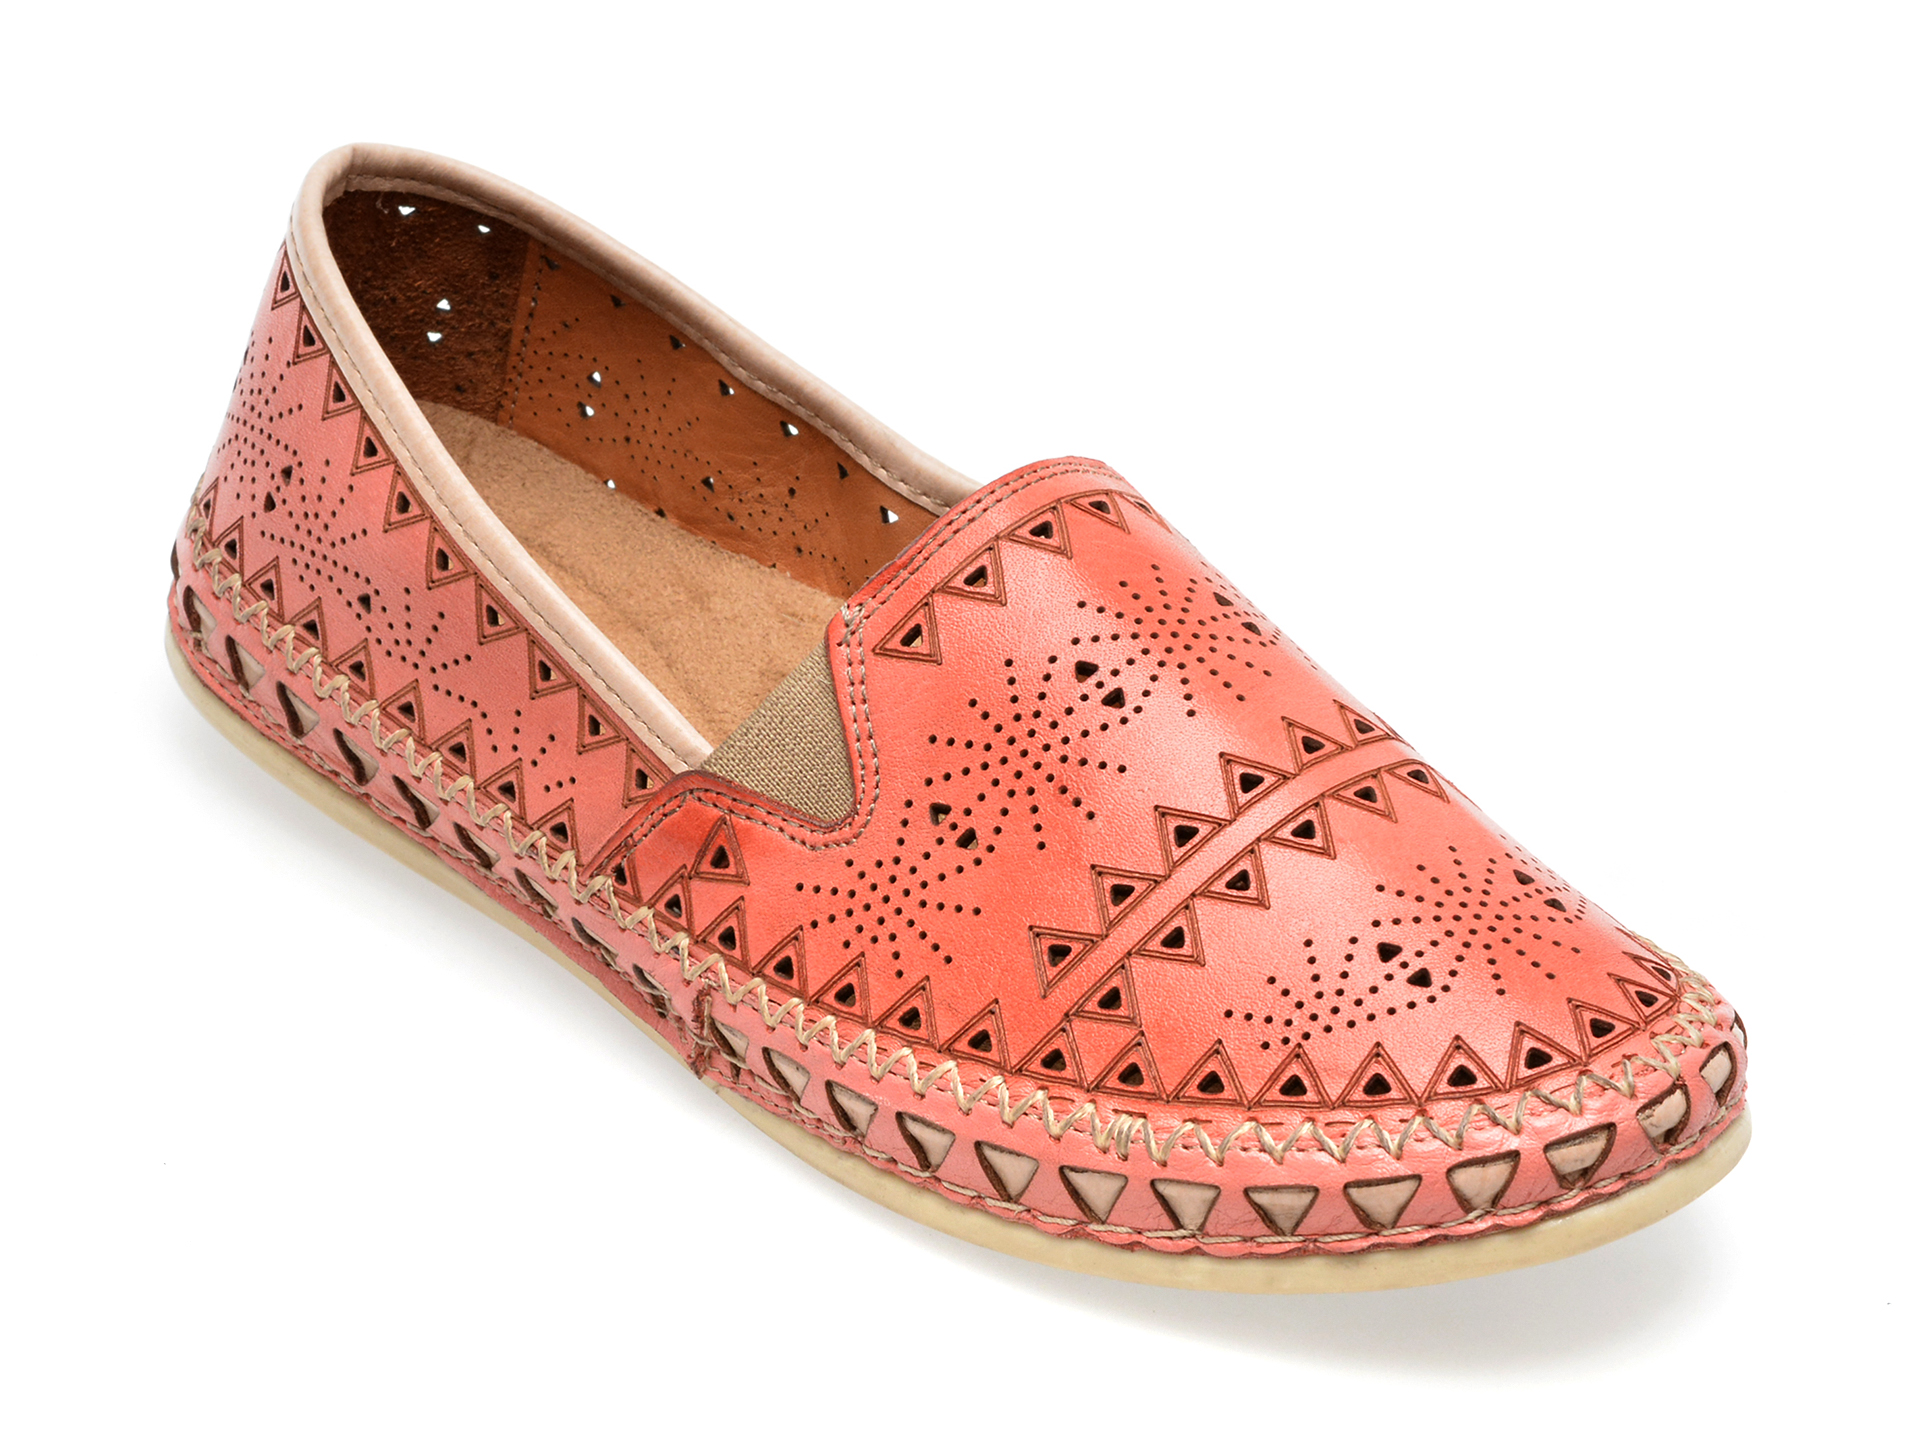 Pantofi FLAVIA PASSINI roz, 6303, din piele naturala Flavia Passini